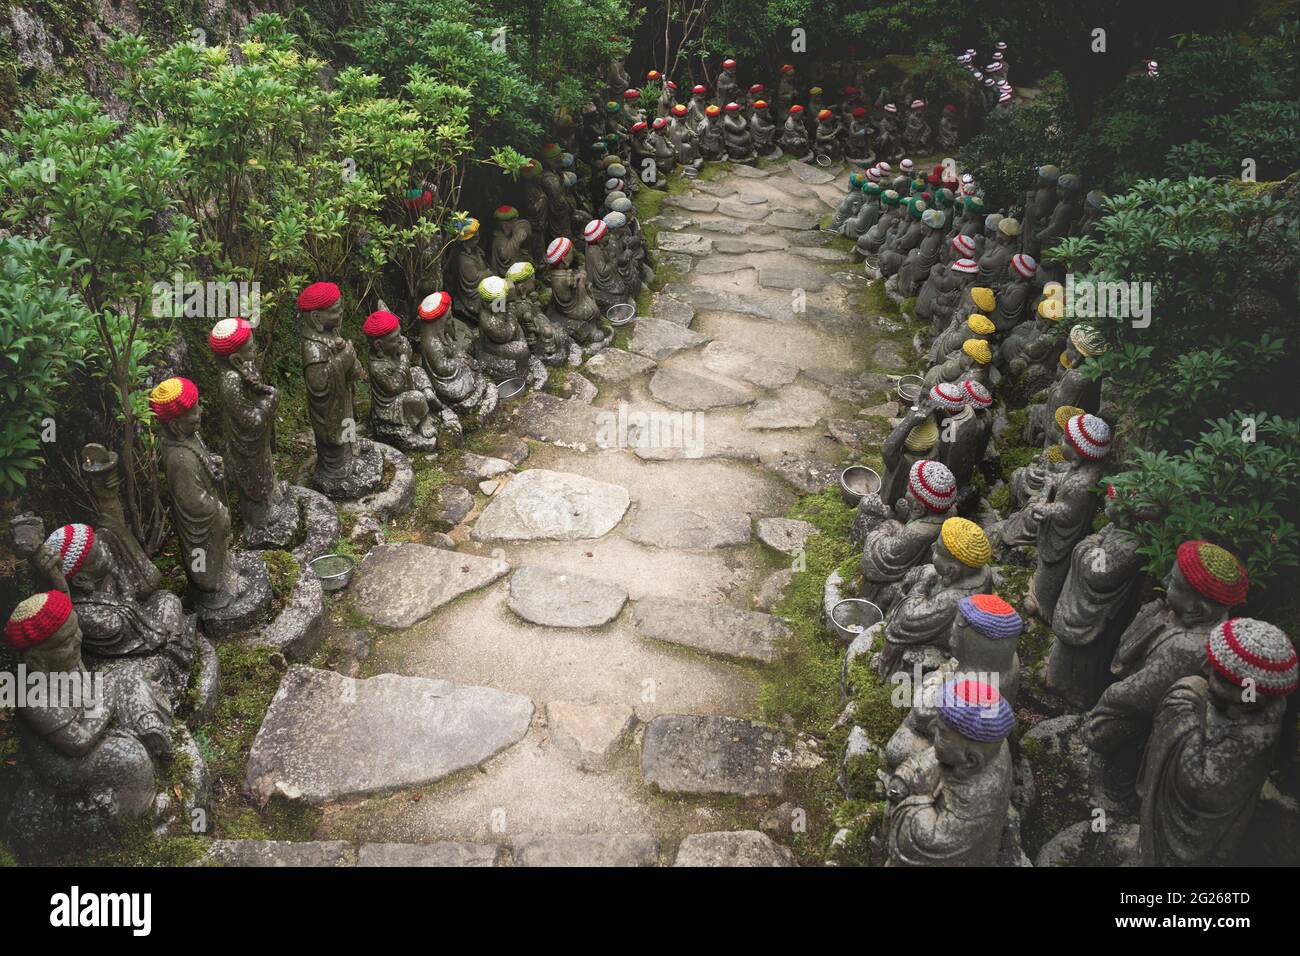 Percorso in pietra circondato da statue di Buddha con offerte di cappelli a maglia che rappresentano i primi 500 discepoli dello storico Buddha Shakyamuni al punto Foto Stock